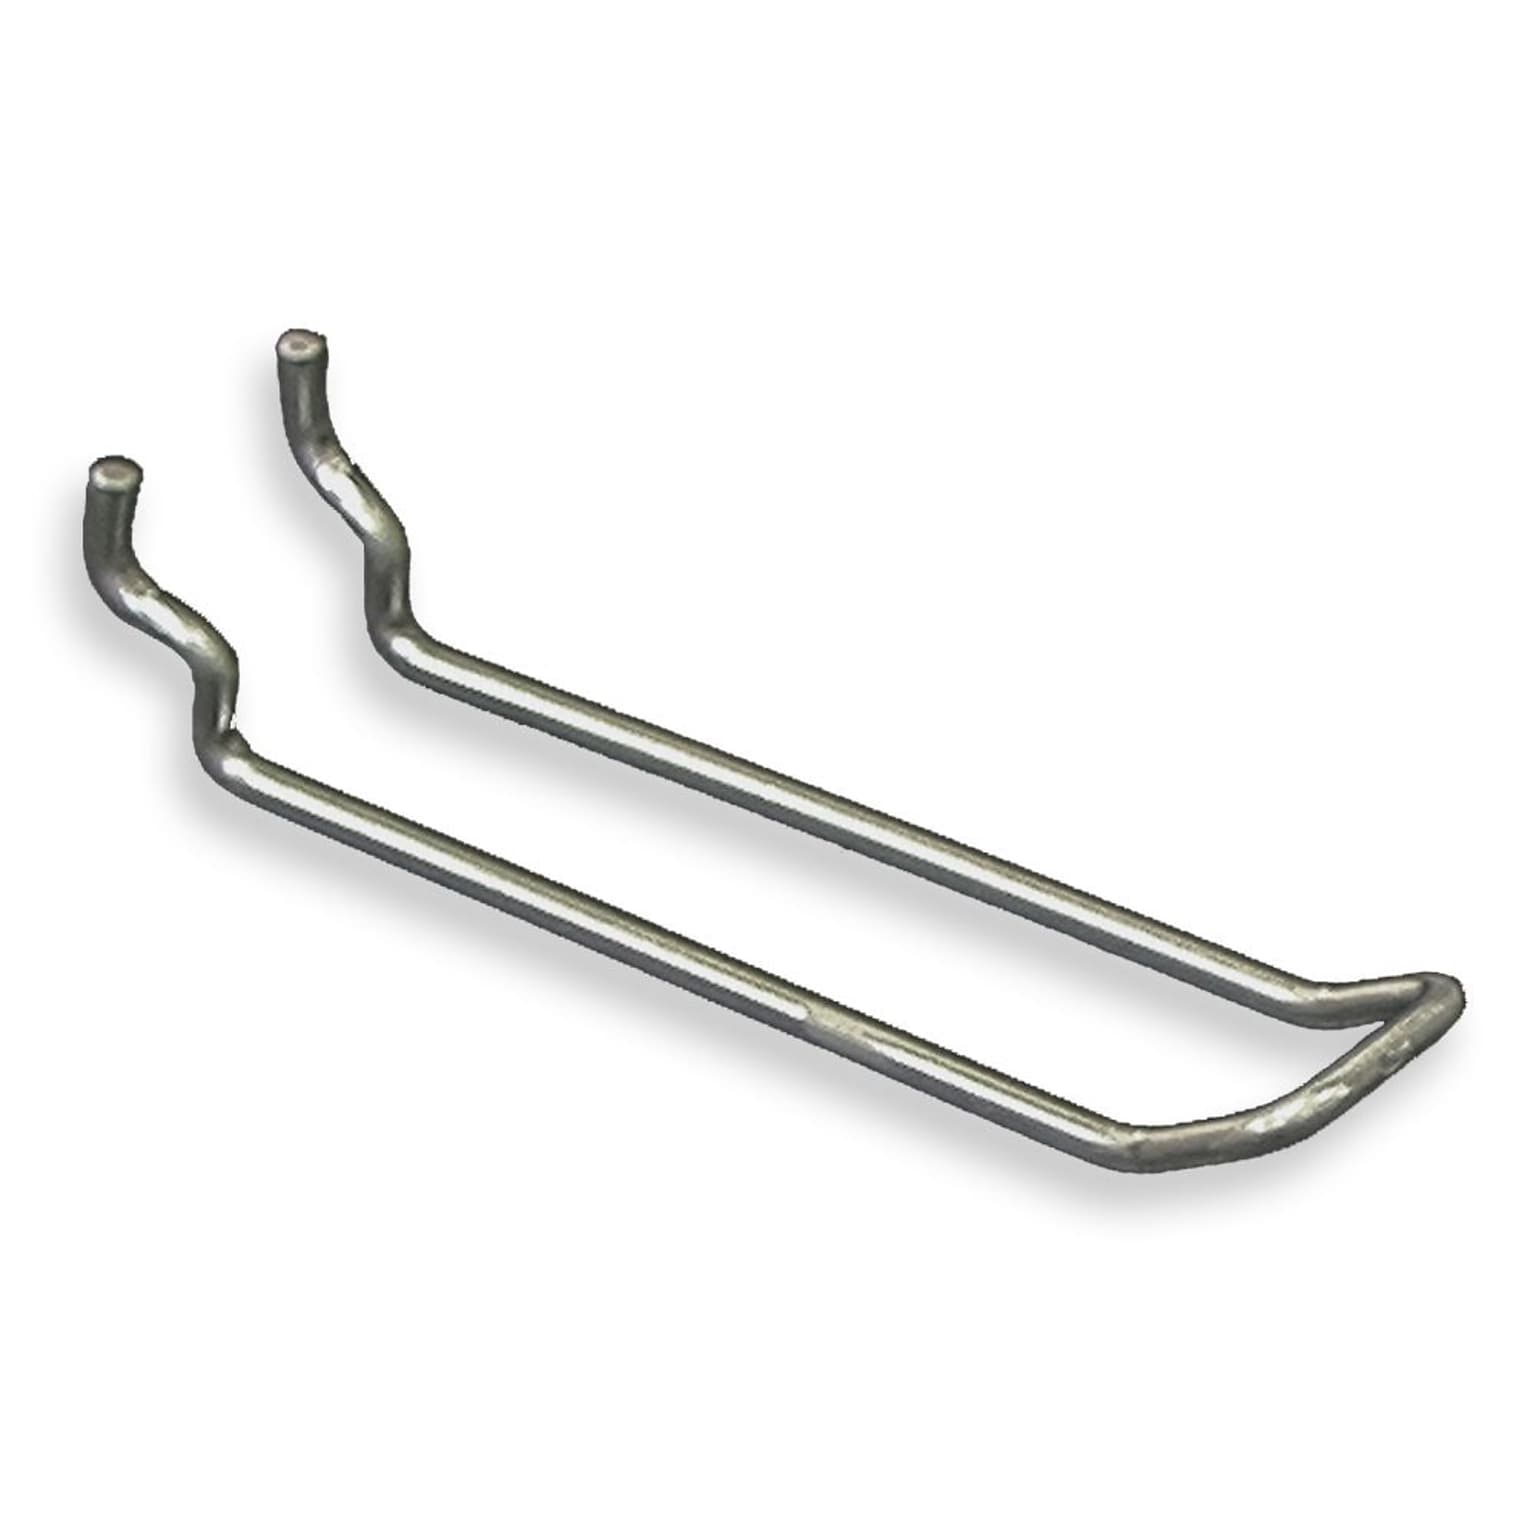 Azar® 4 x 0.148(Dia) Safety Metal Loop Hooks, 25/Pack